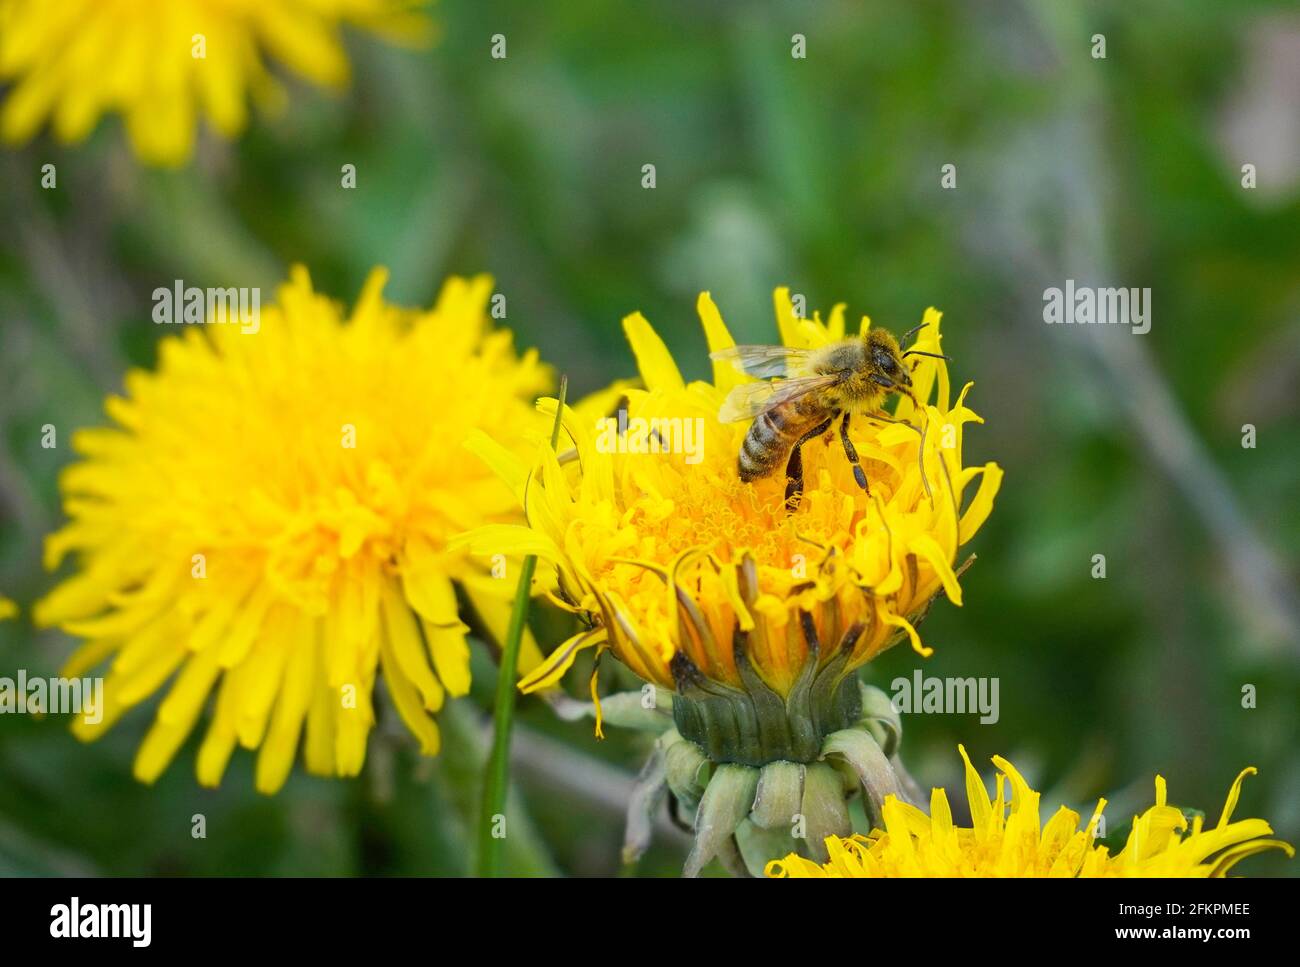 Die Biene sammelt Nektar und Pollen auf einer gelben Dandelionenblume. Insekten mit Flügeln. APIs mellifera. Grüner Hintergrund einer Wiese. Stockfoto